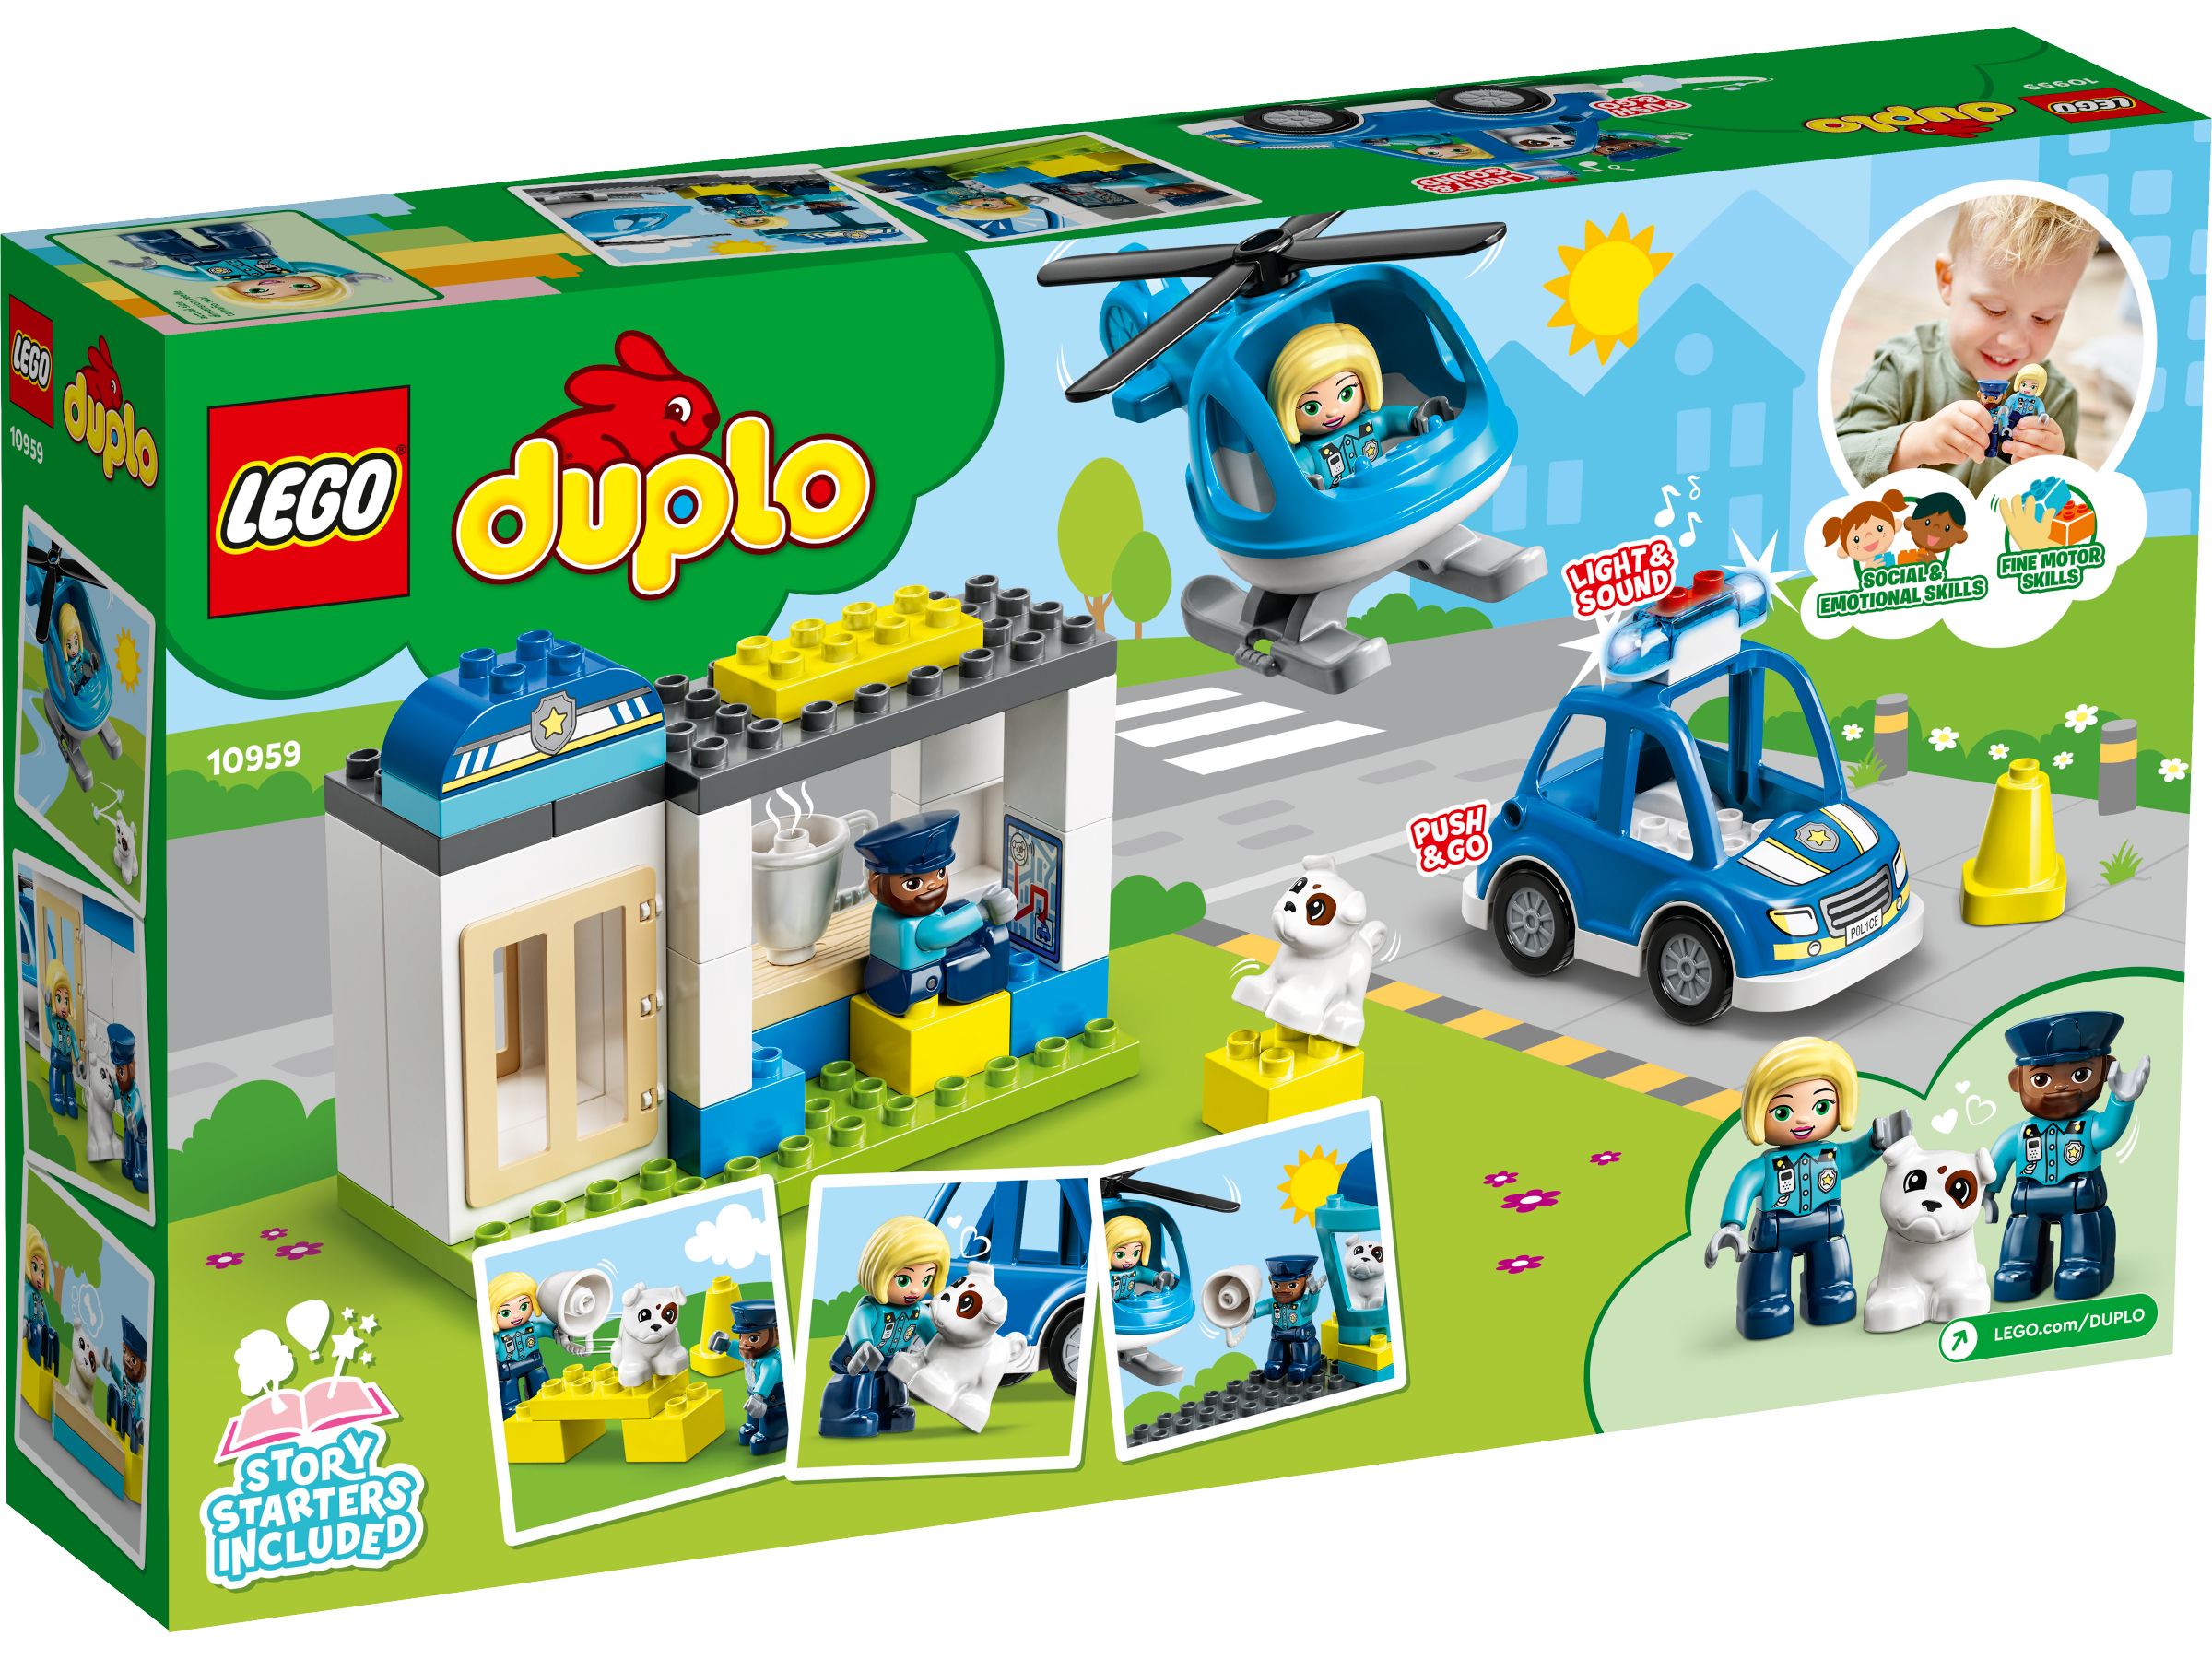 LEGO Duplo 10959 Polizeistation mit Hubschrauber LEGO_10959_alt4.jpg